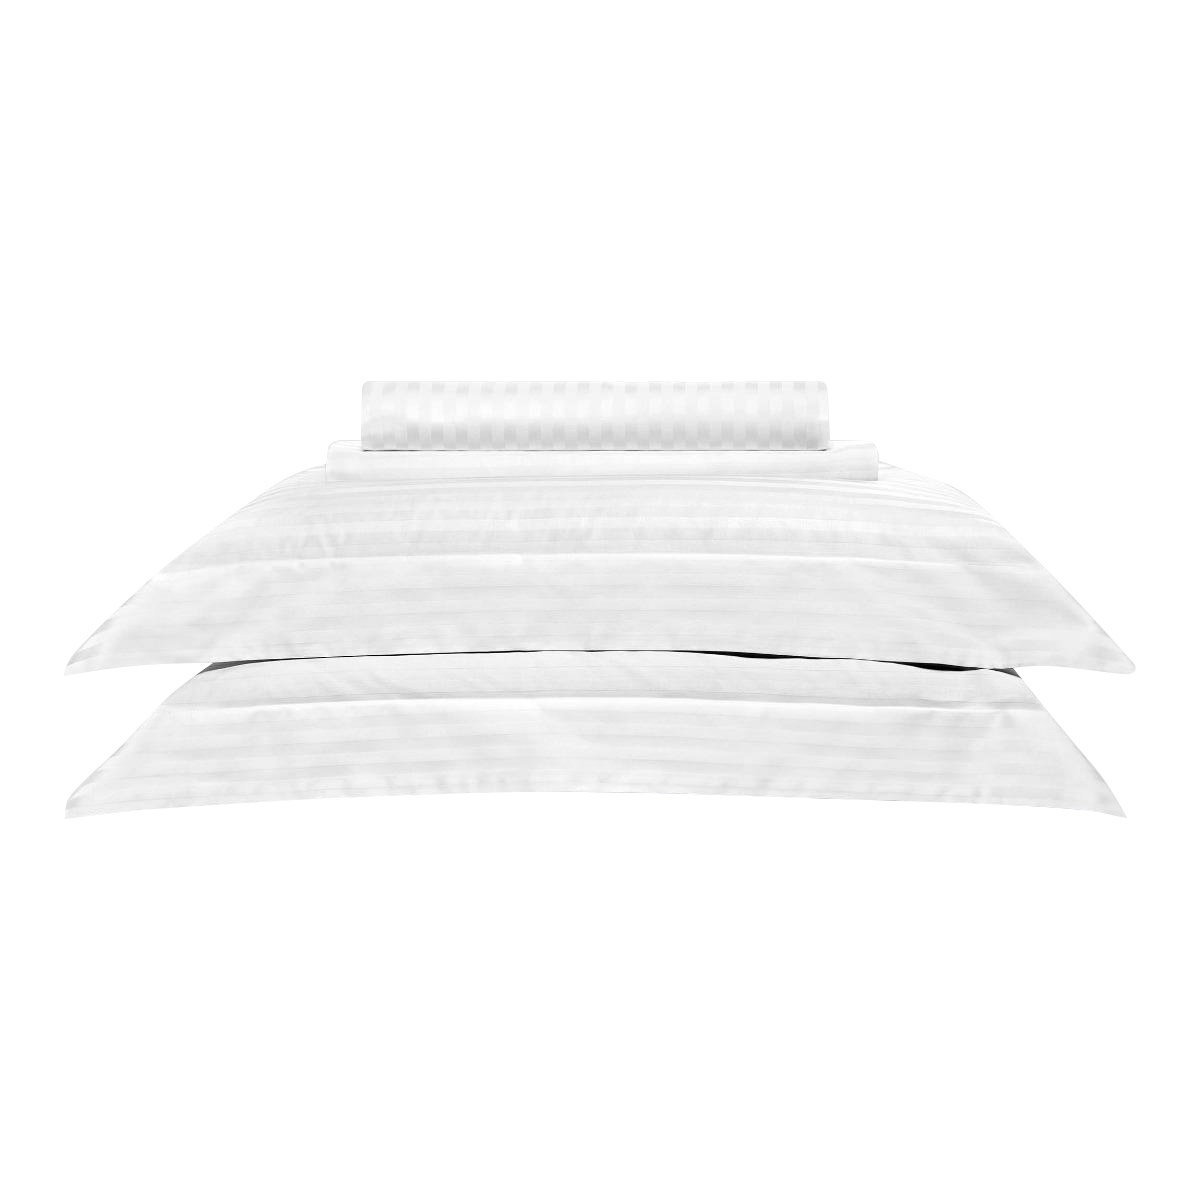 Комплект постельного белья Togas Кирос Двуспальный кинг сайз белый, размер Двуспальный евро - фото 6